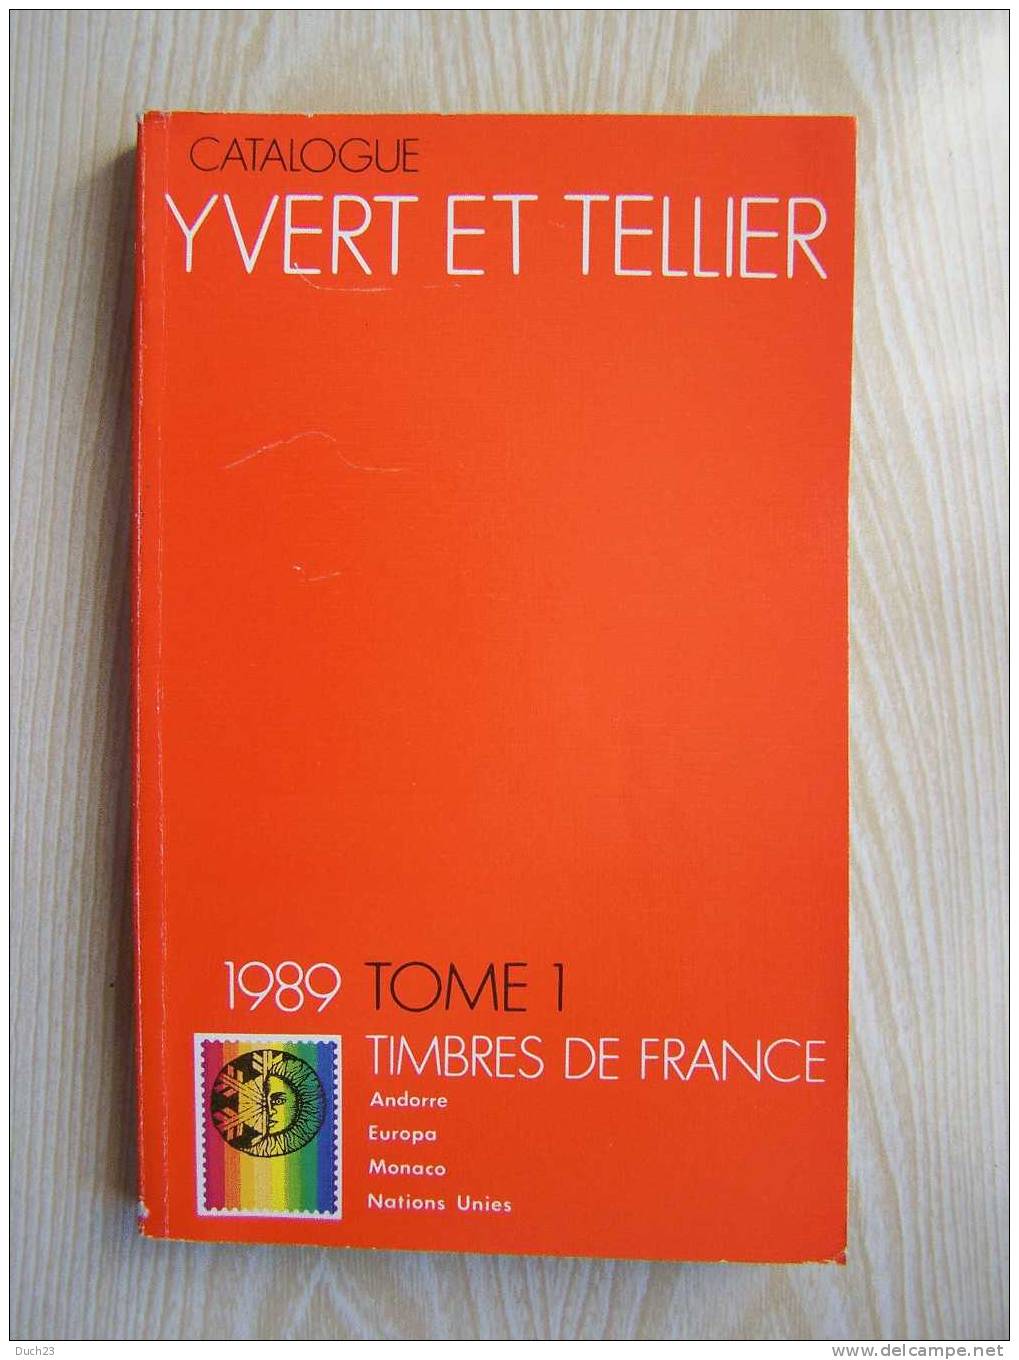 CATALOGUE DE COTATION YVERT ET TELLIER ANNEE 1989 TOME 1 TRES BON ETAT   REF CD - Francia